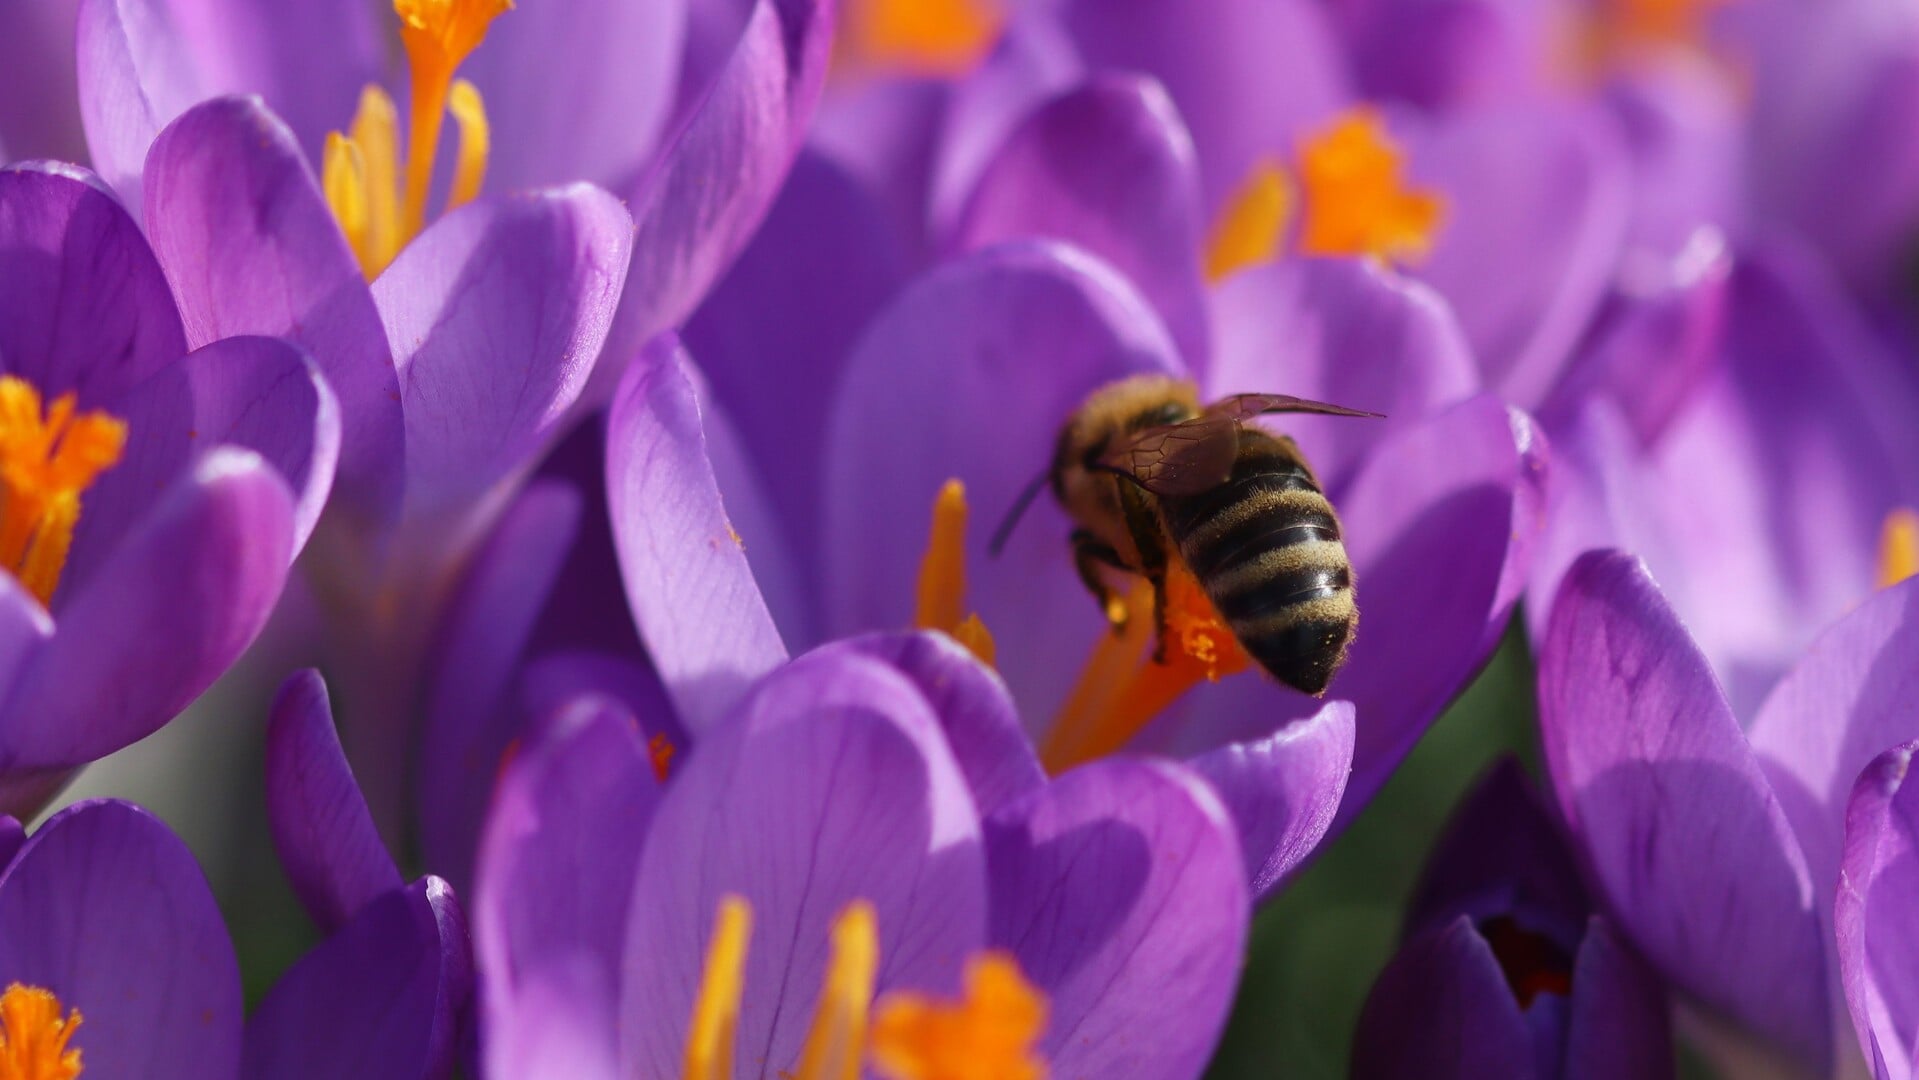 Het Natuurhus heeft een lezing over bijen. (Foto: Loes van den Bos)